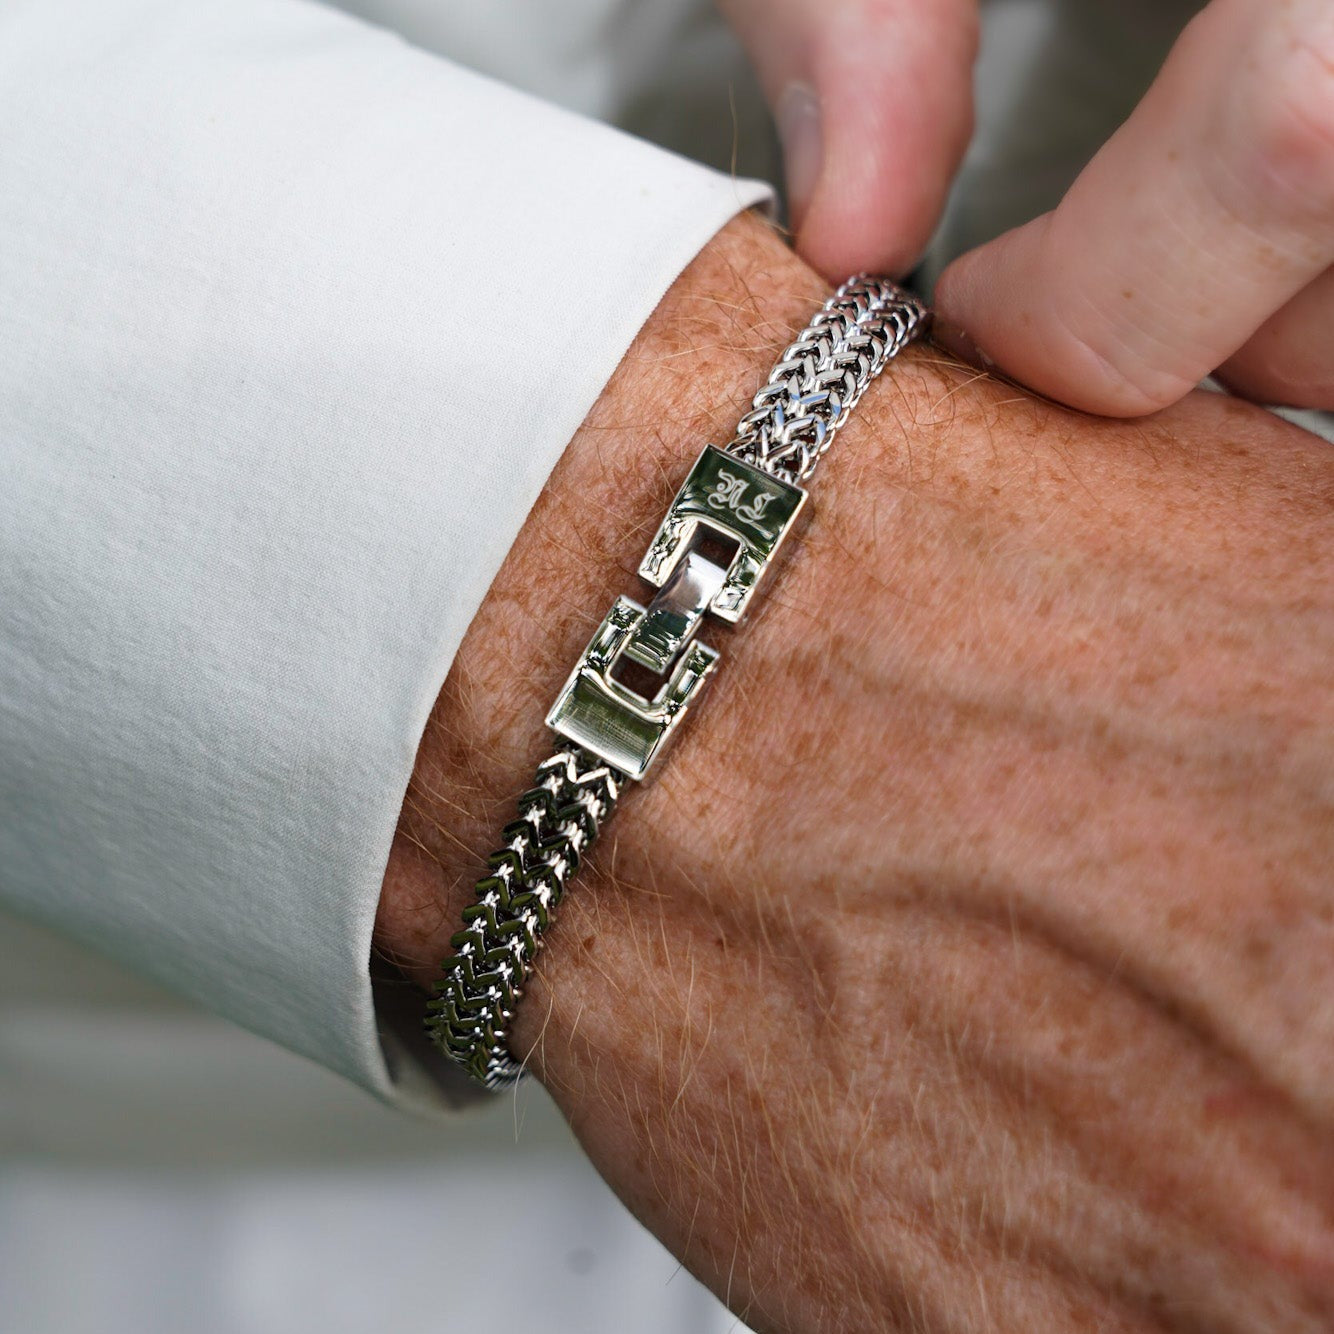 NL Fehu bracelet - Silver-toned